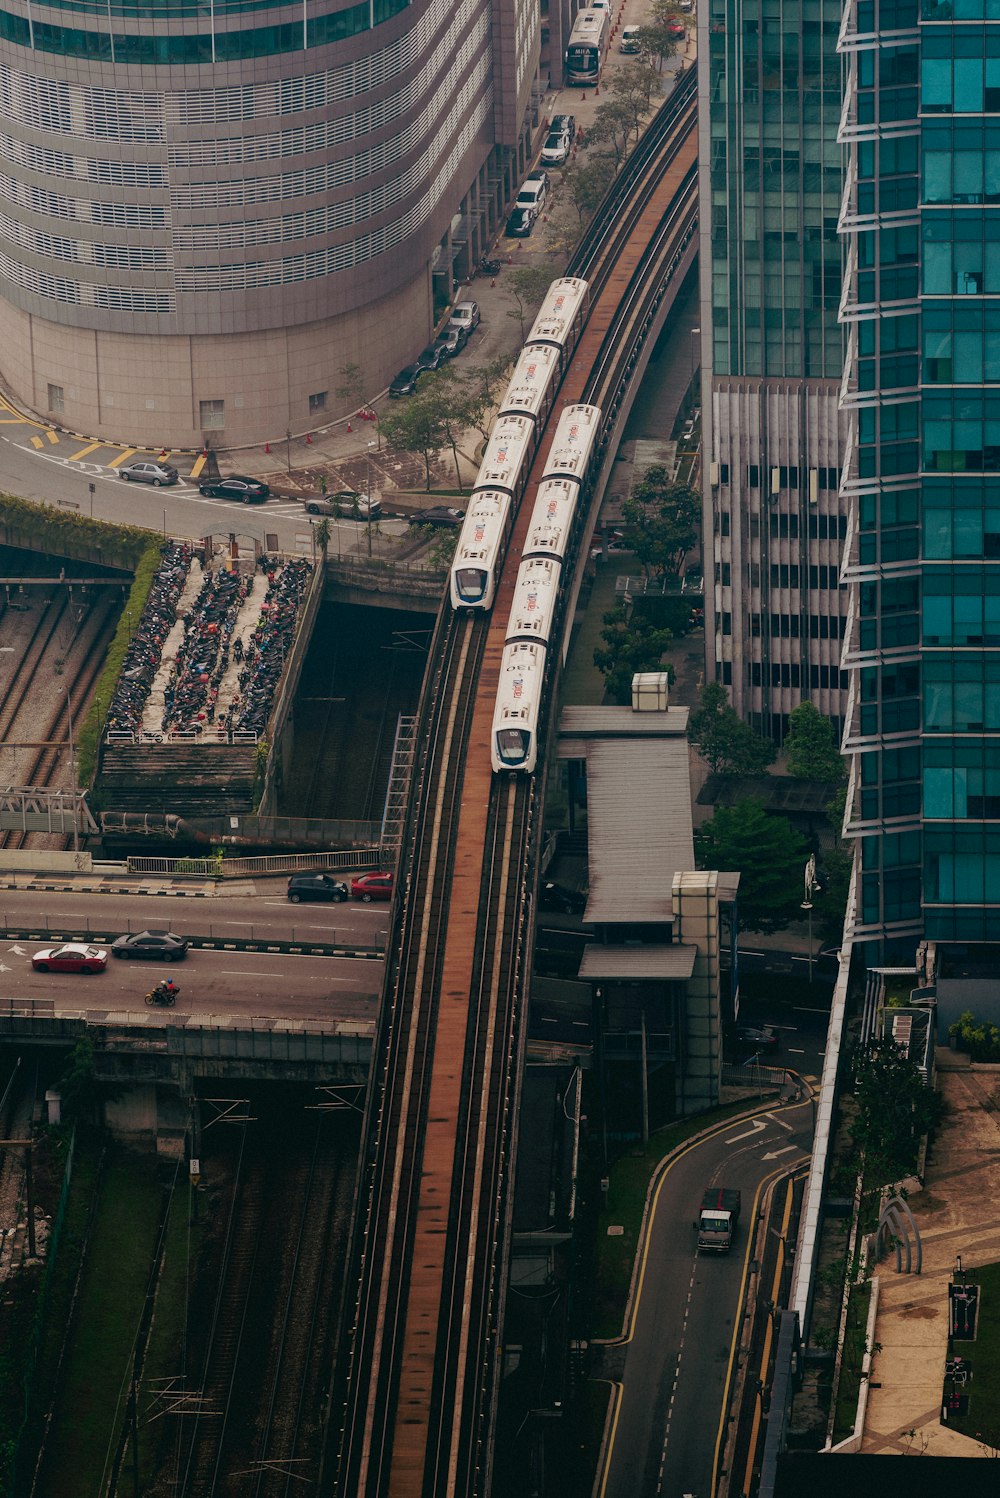 une vue aérienne d’un train sur les voies ferrées d’une ville